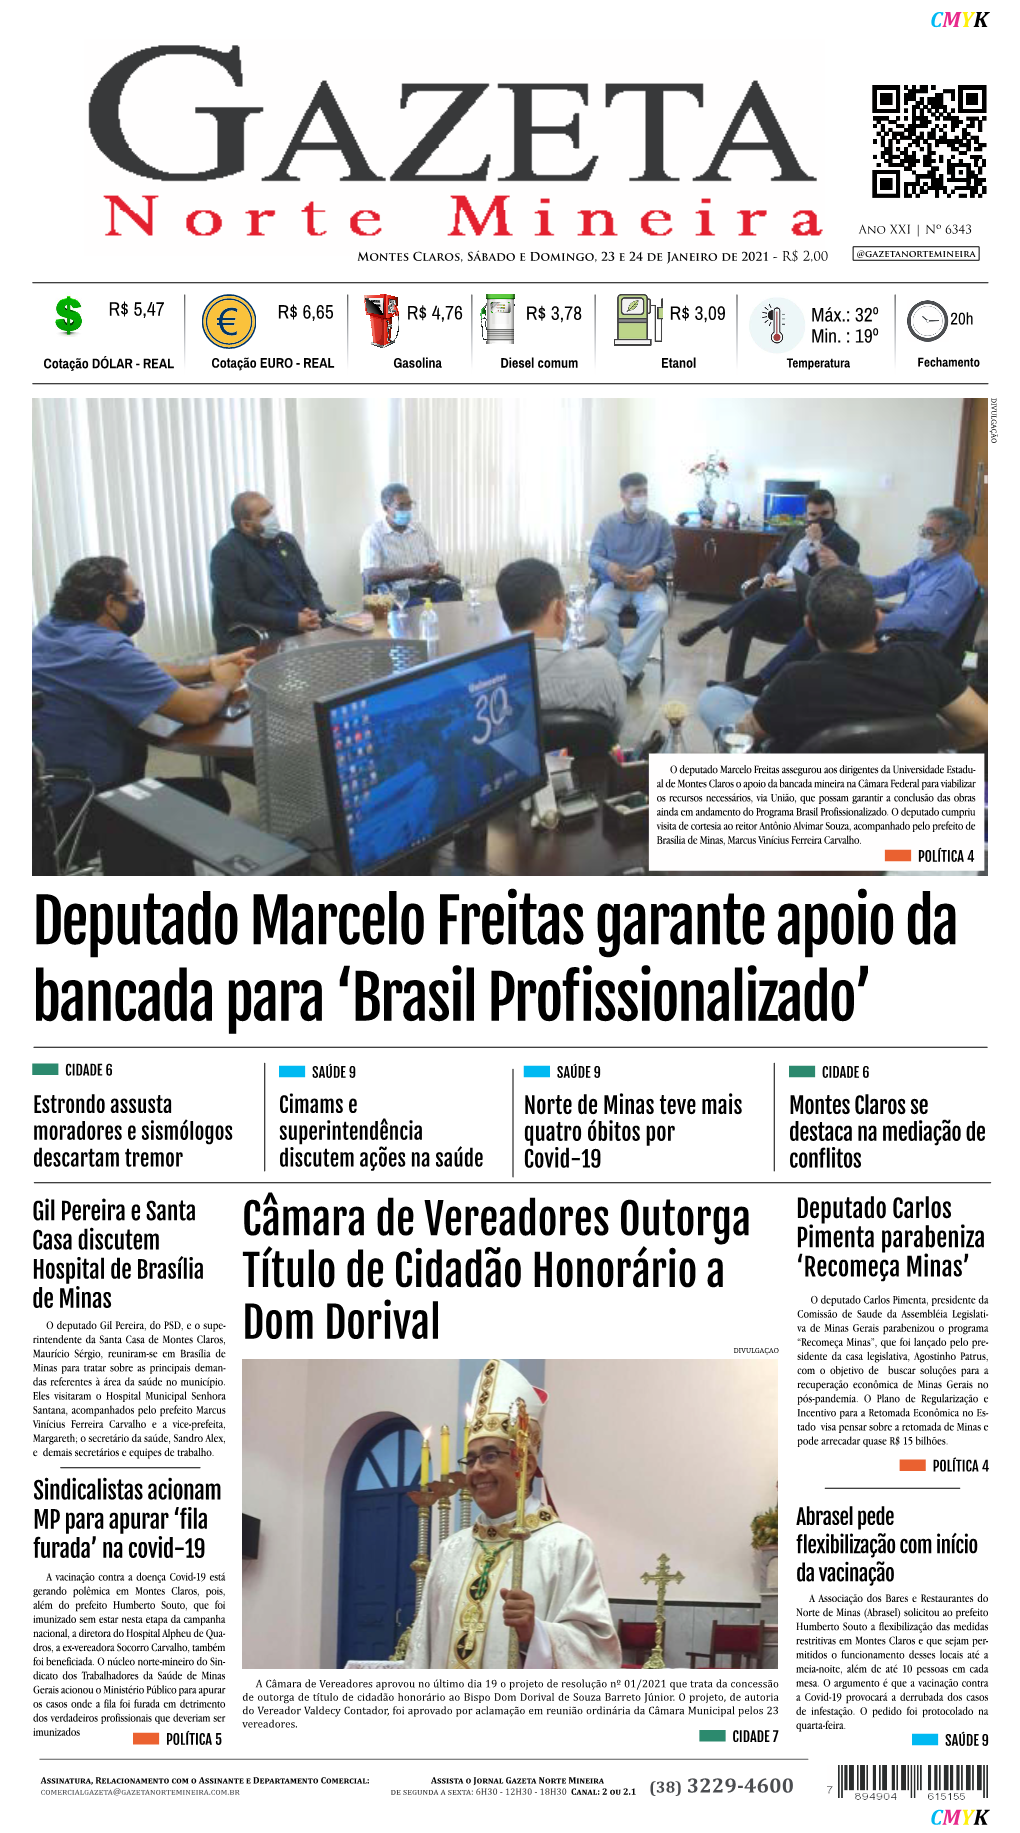 Deputado Marcelo Freitas Garante Apoio Da Bancada Para 'Brasil Profissionalizado'